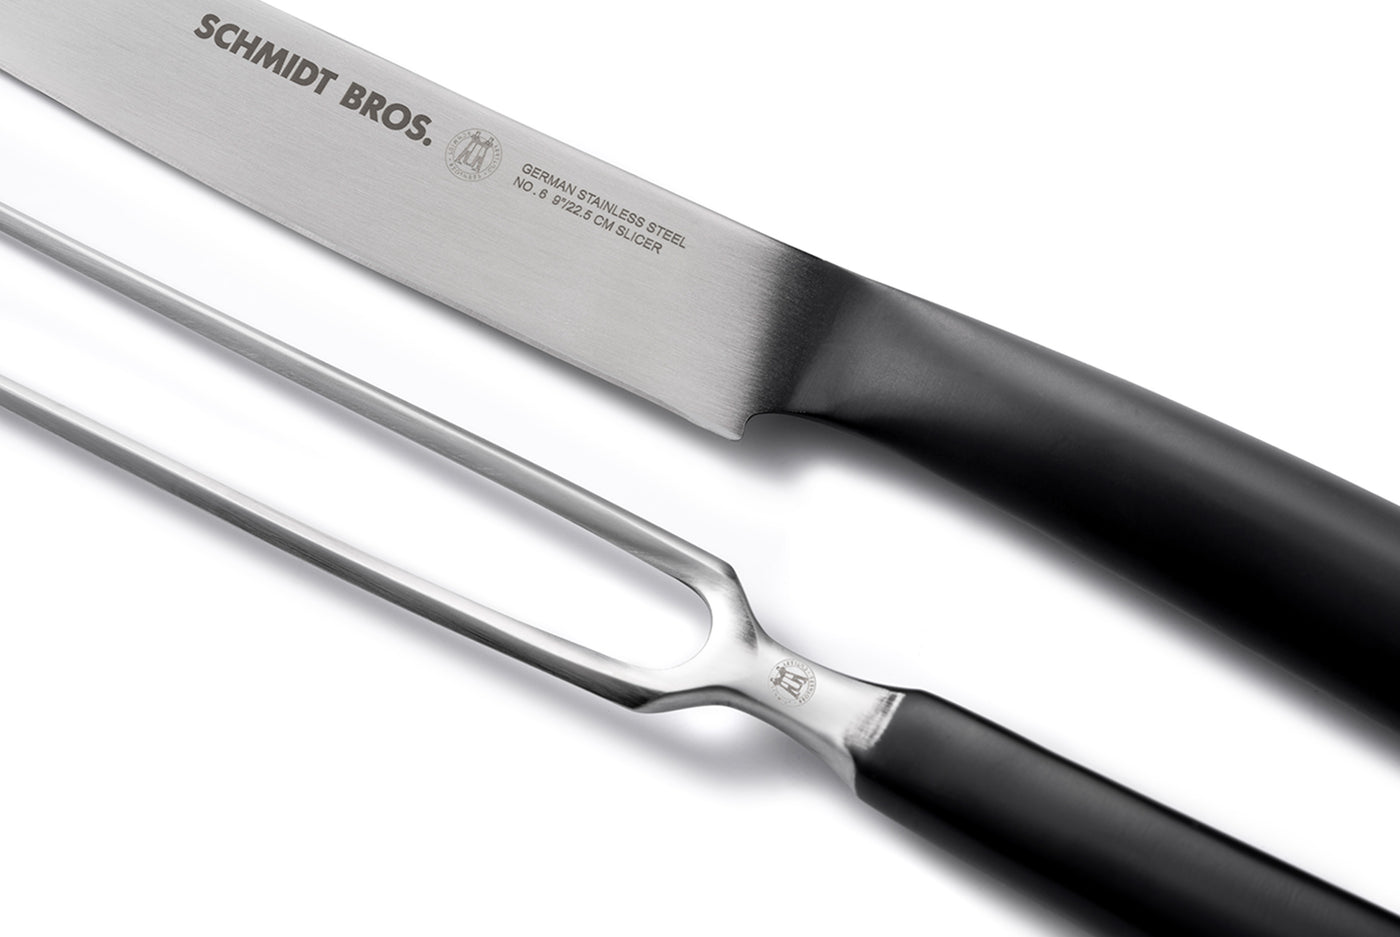 Schmidt Brothers Bonded Ash Steak Knives, High-Carbon Steel on Food52